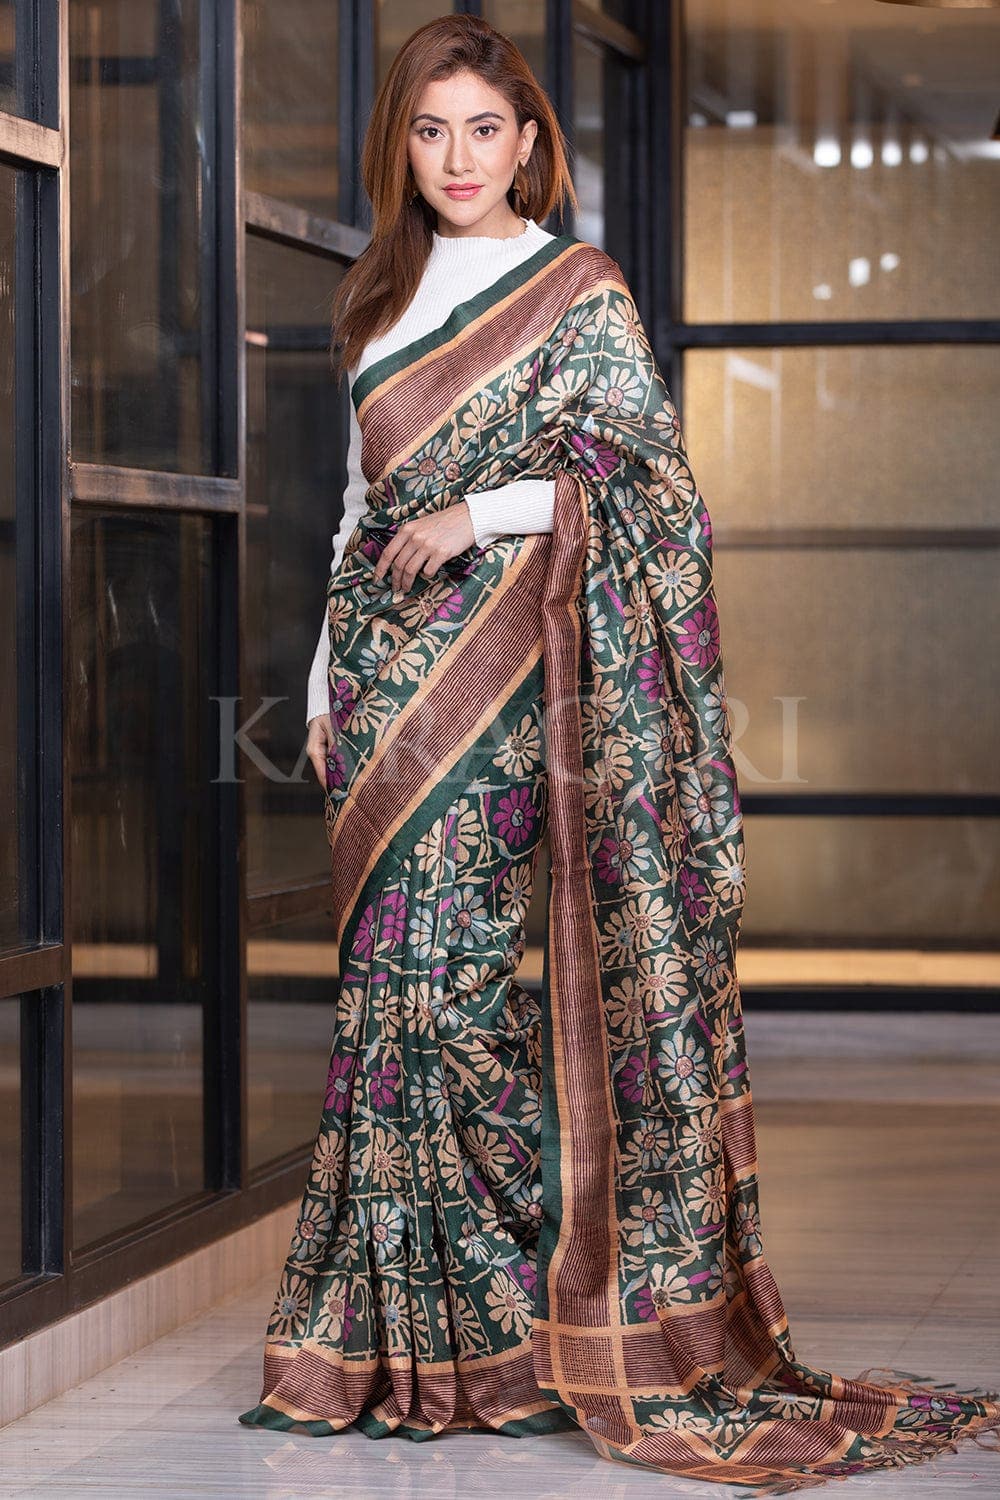 Discover more than 82 latest kalamkari sarees